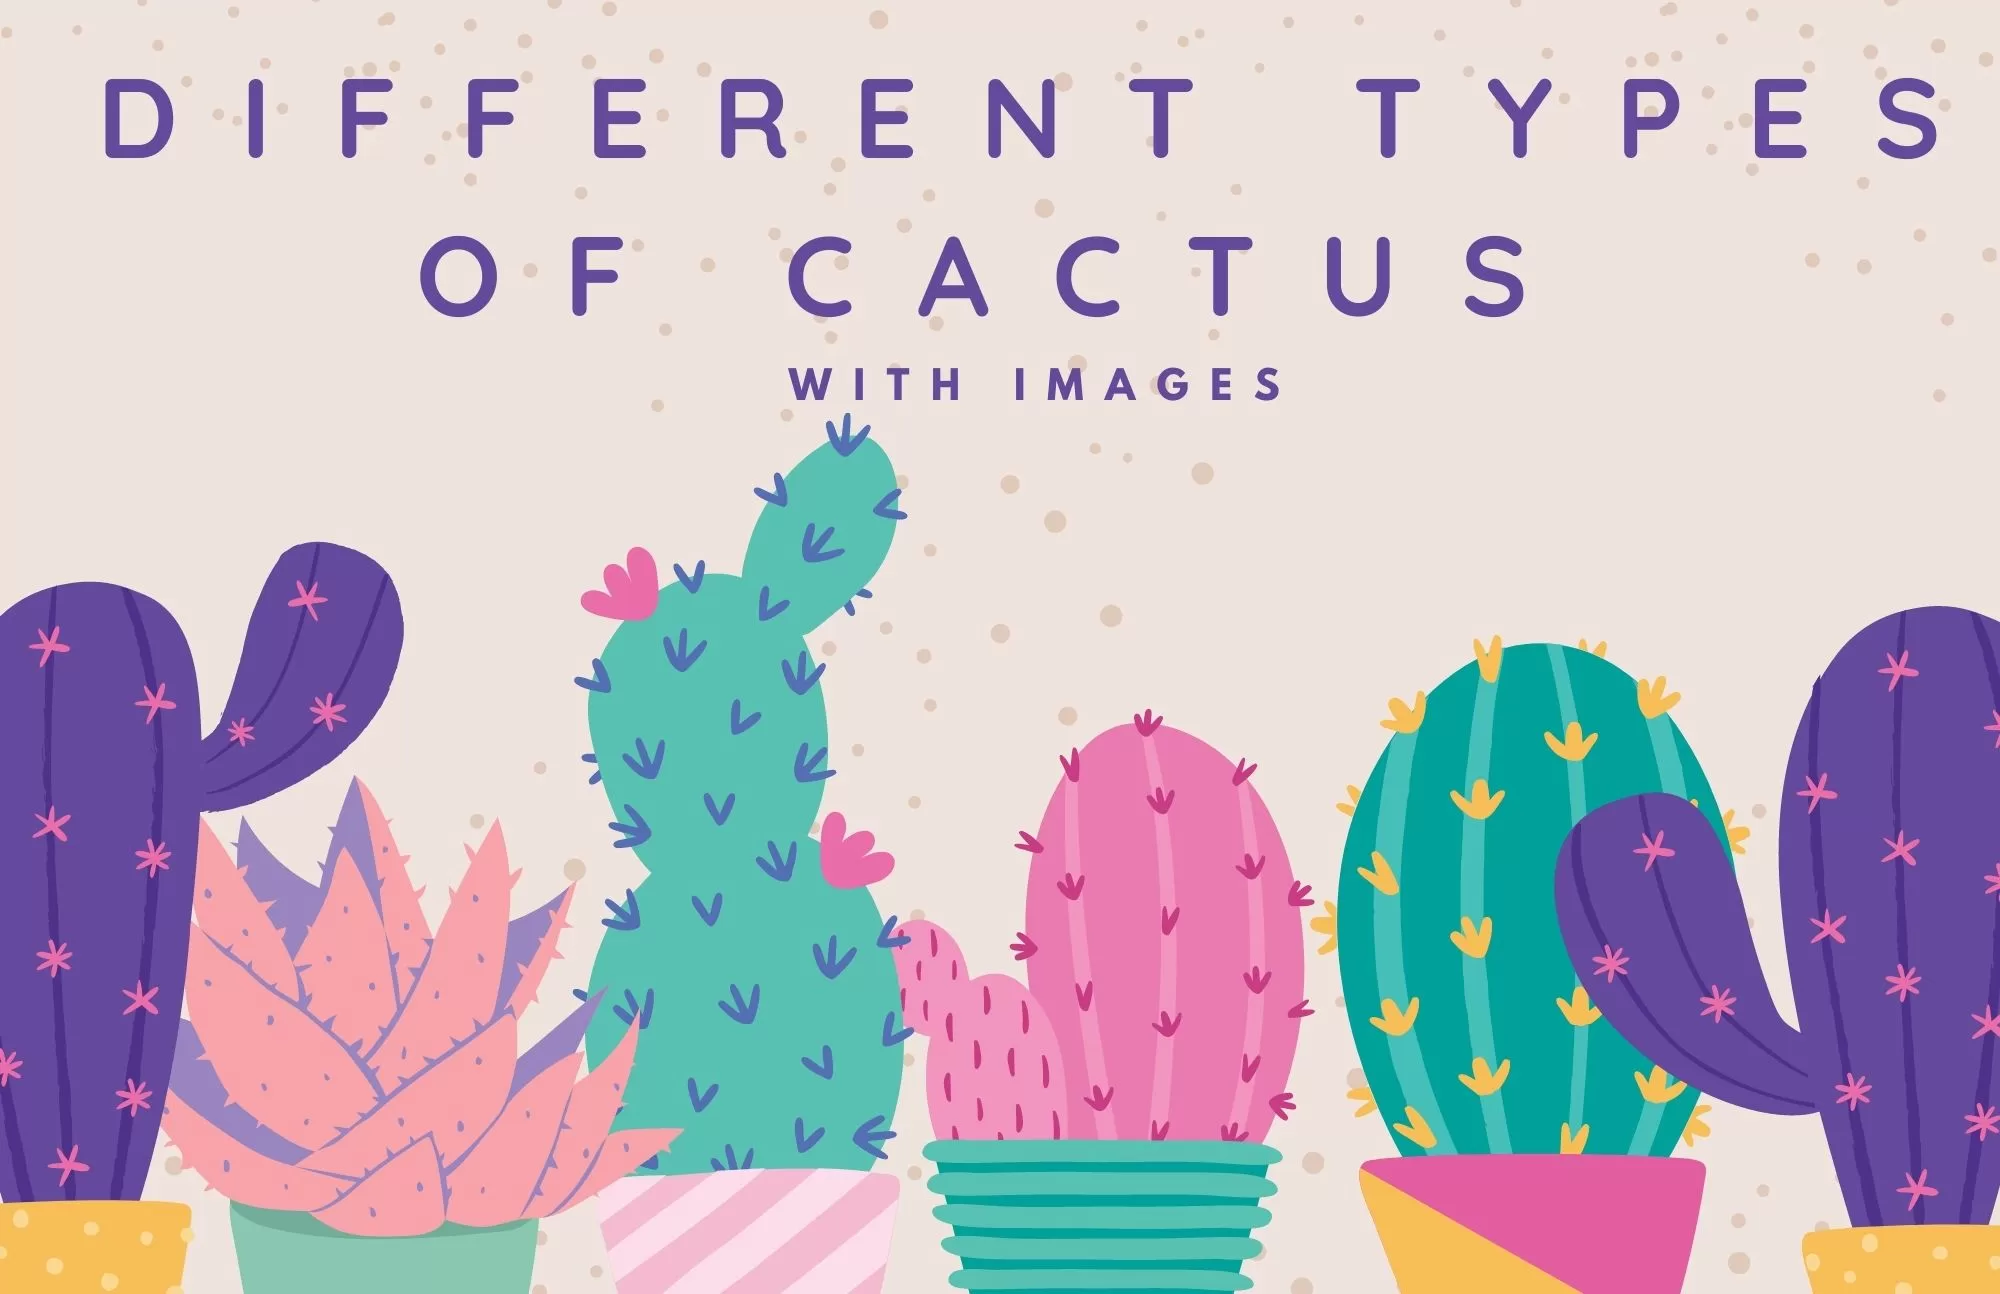 Types Of Cactus